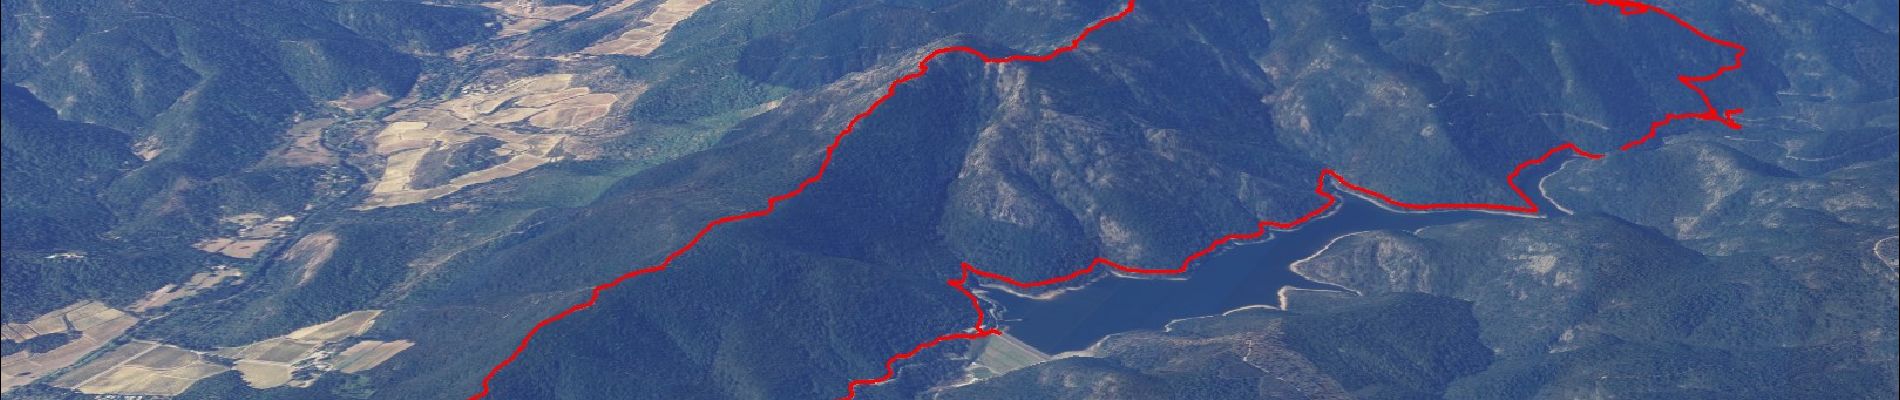 Randonnée Marche La Môle - Barrage de la verne - Sommet de l'Argentière par les crêtes des Pradets - Retour par le bord du lac (V1) - Photo